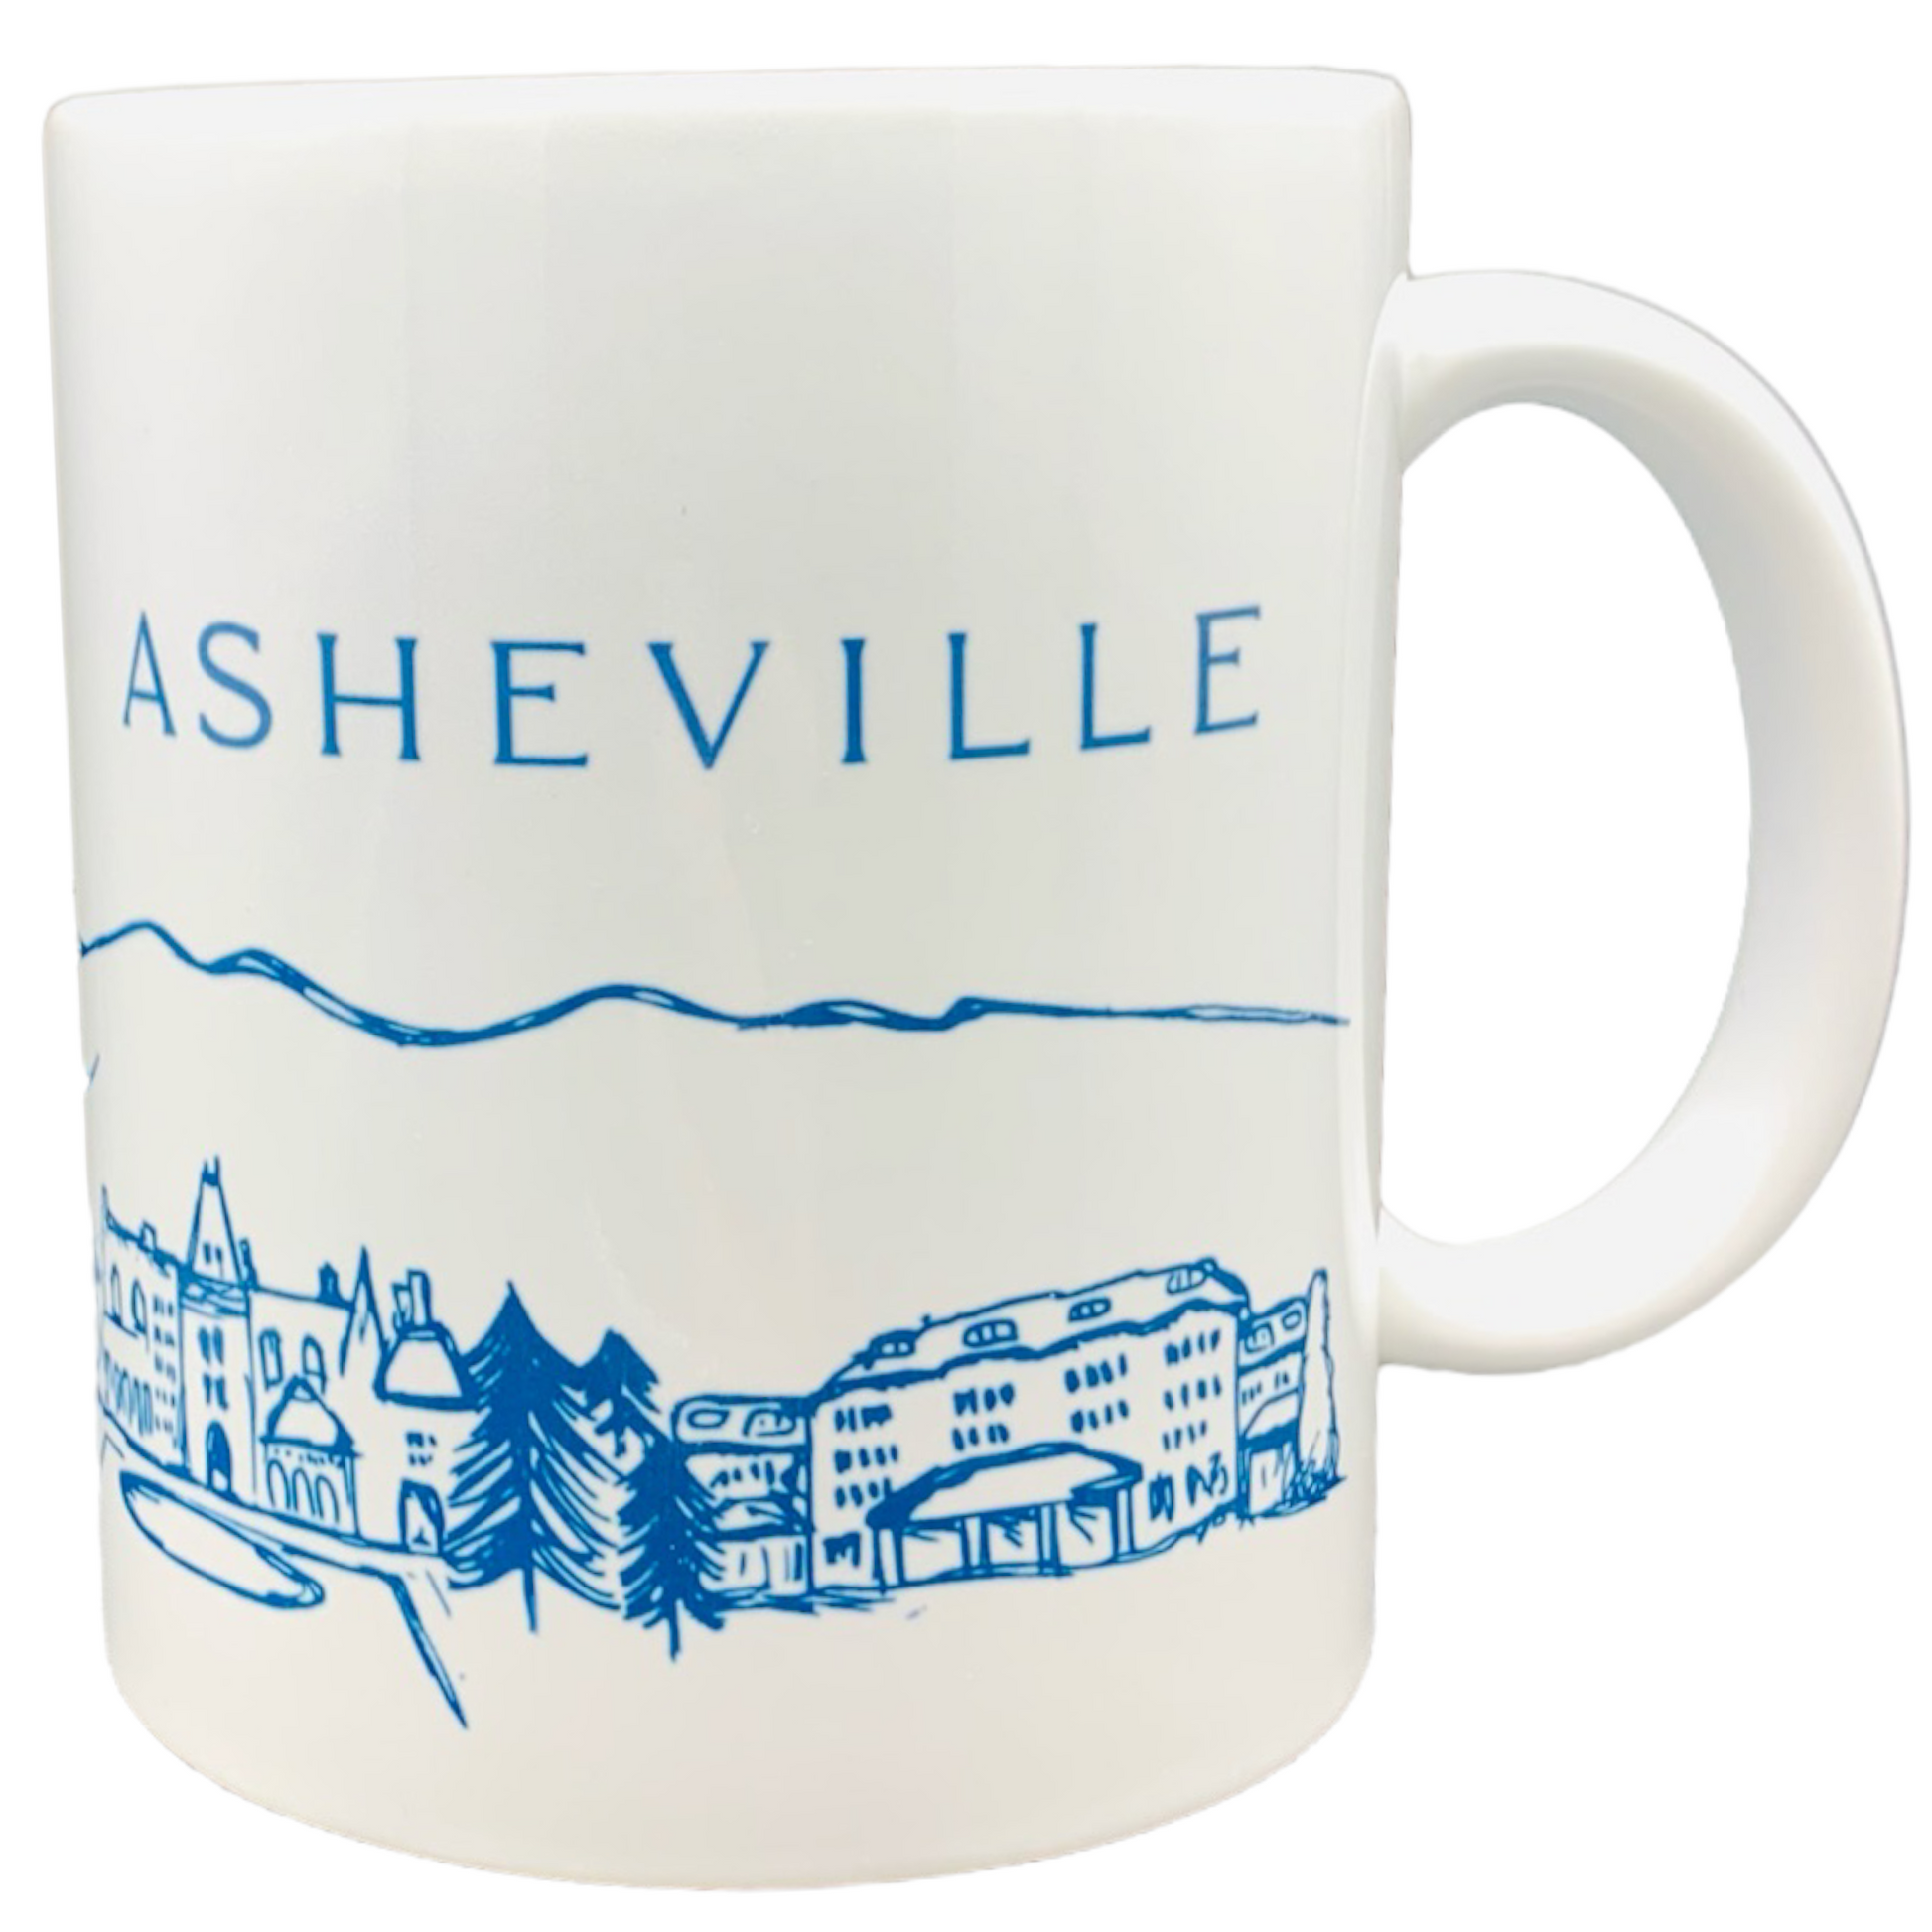 ASHEVILLE Mountain Cityscape & Landmarks Ceramic Mug - The ASHEVILLE Co. TM